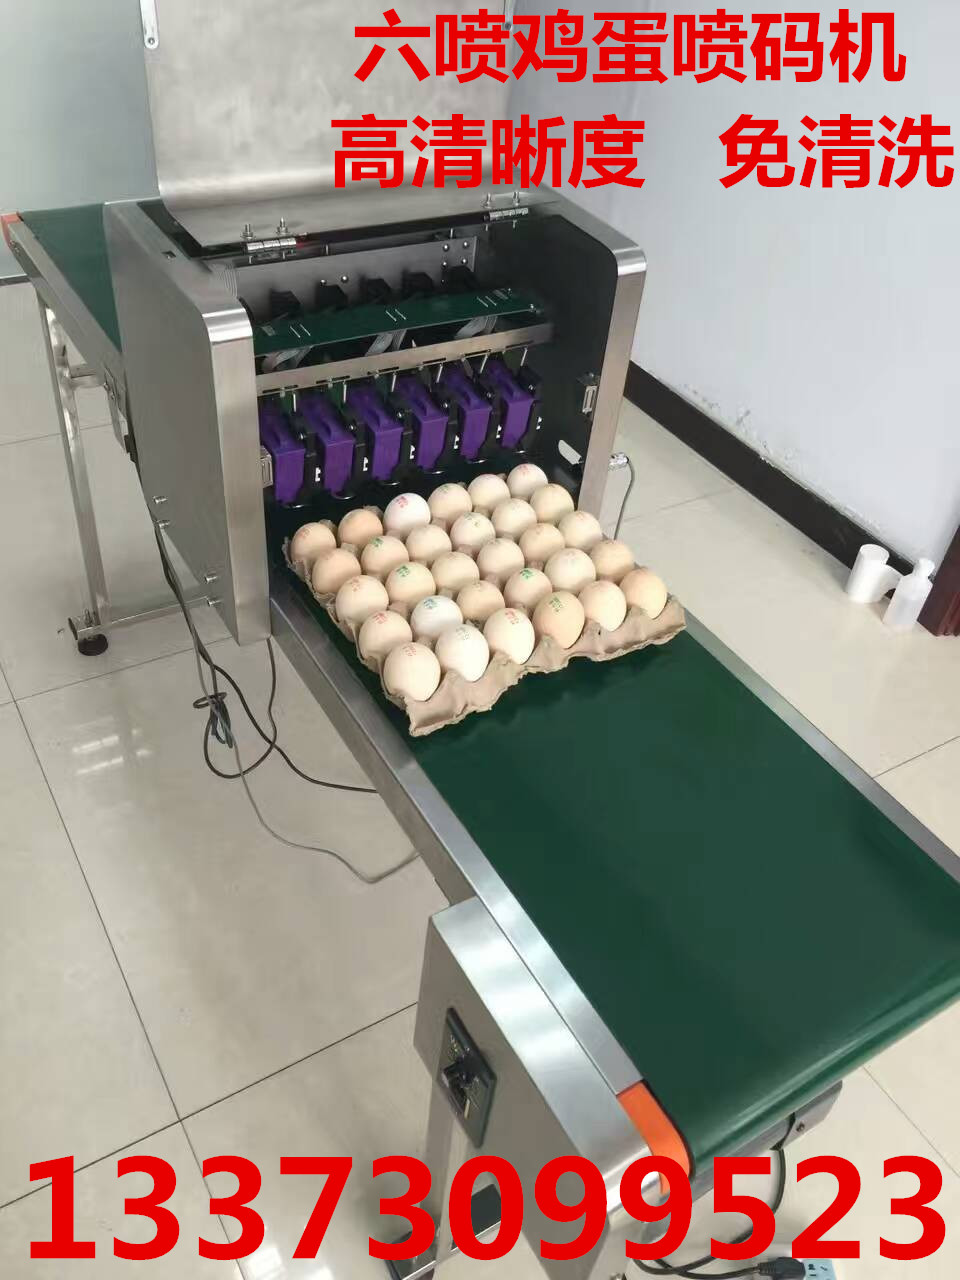 邢台市鸡蛋喷码机鸡蛋喷字机厂家